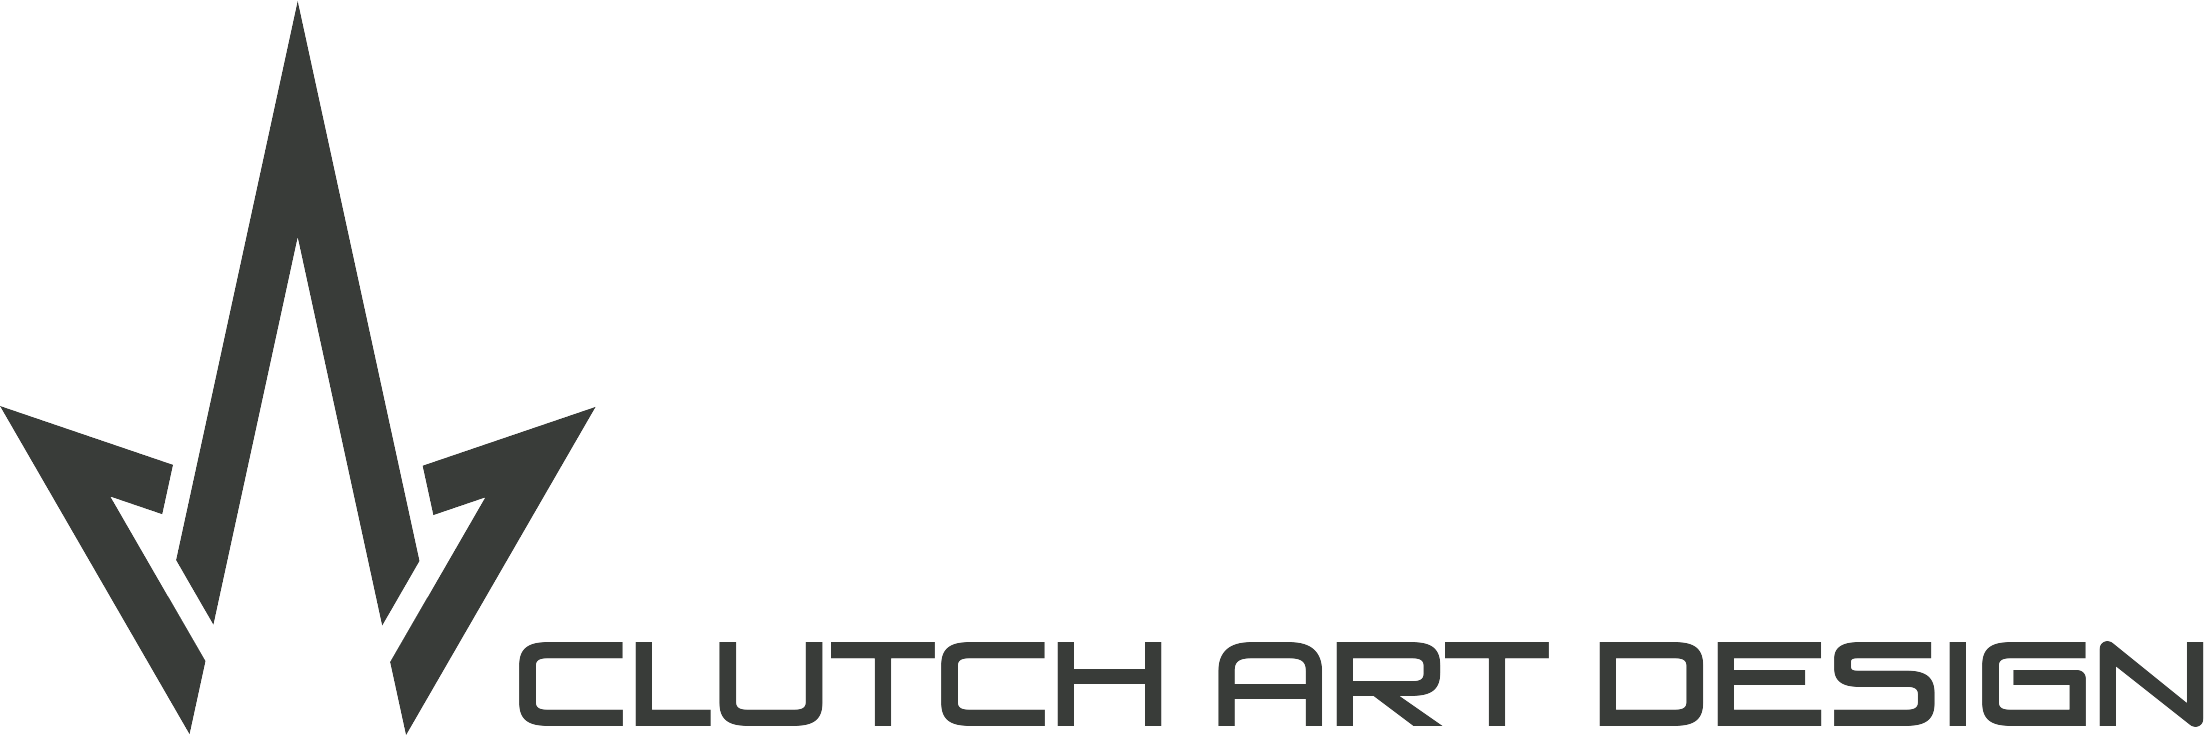 Clutch Art & Design